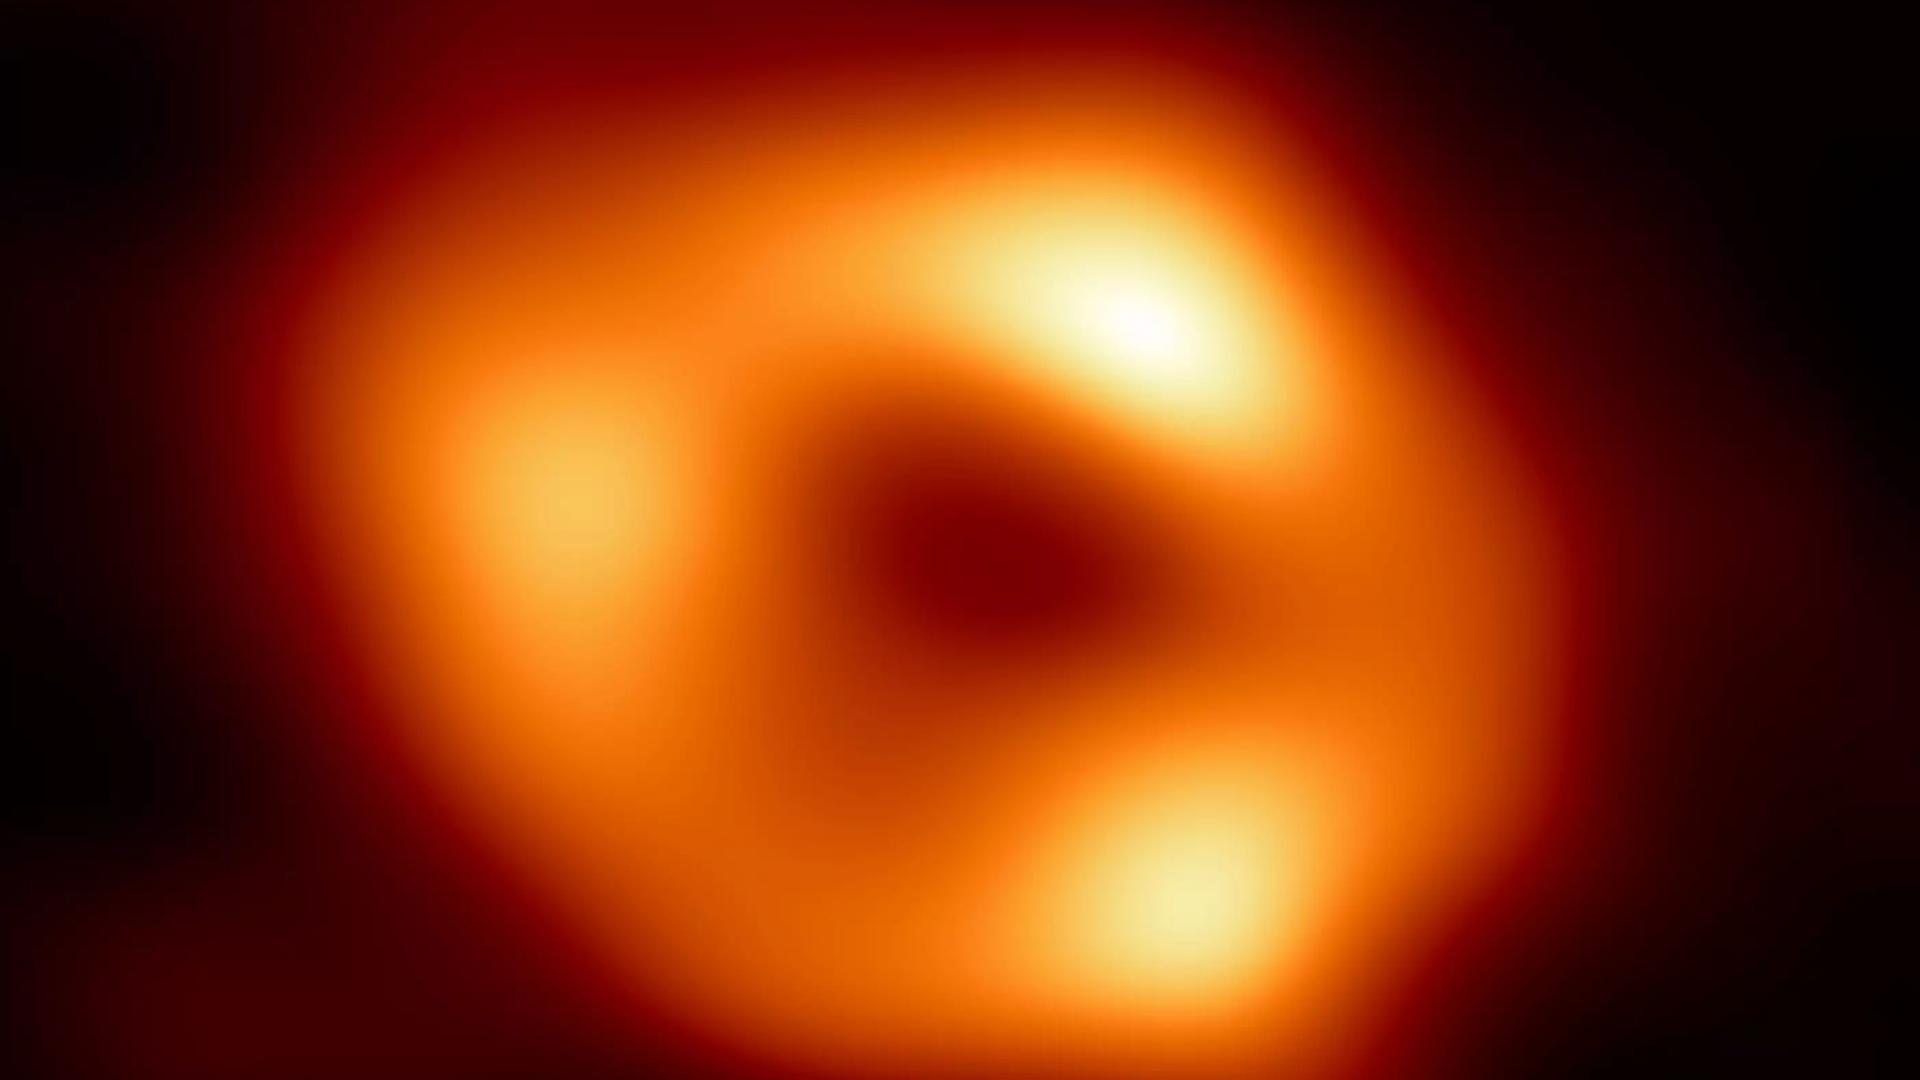 Das Schwarze Loch im Zentrum der Milchstraße hat mehr als vier Millionen Sonnenmassen, aber nicht einmal 30 Millionen Kilometer Durchmesser